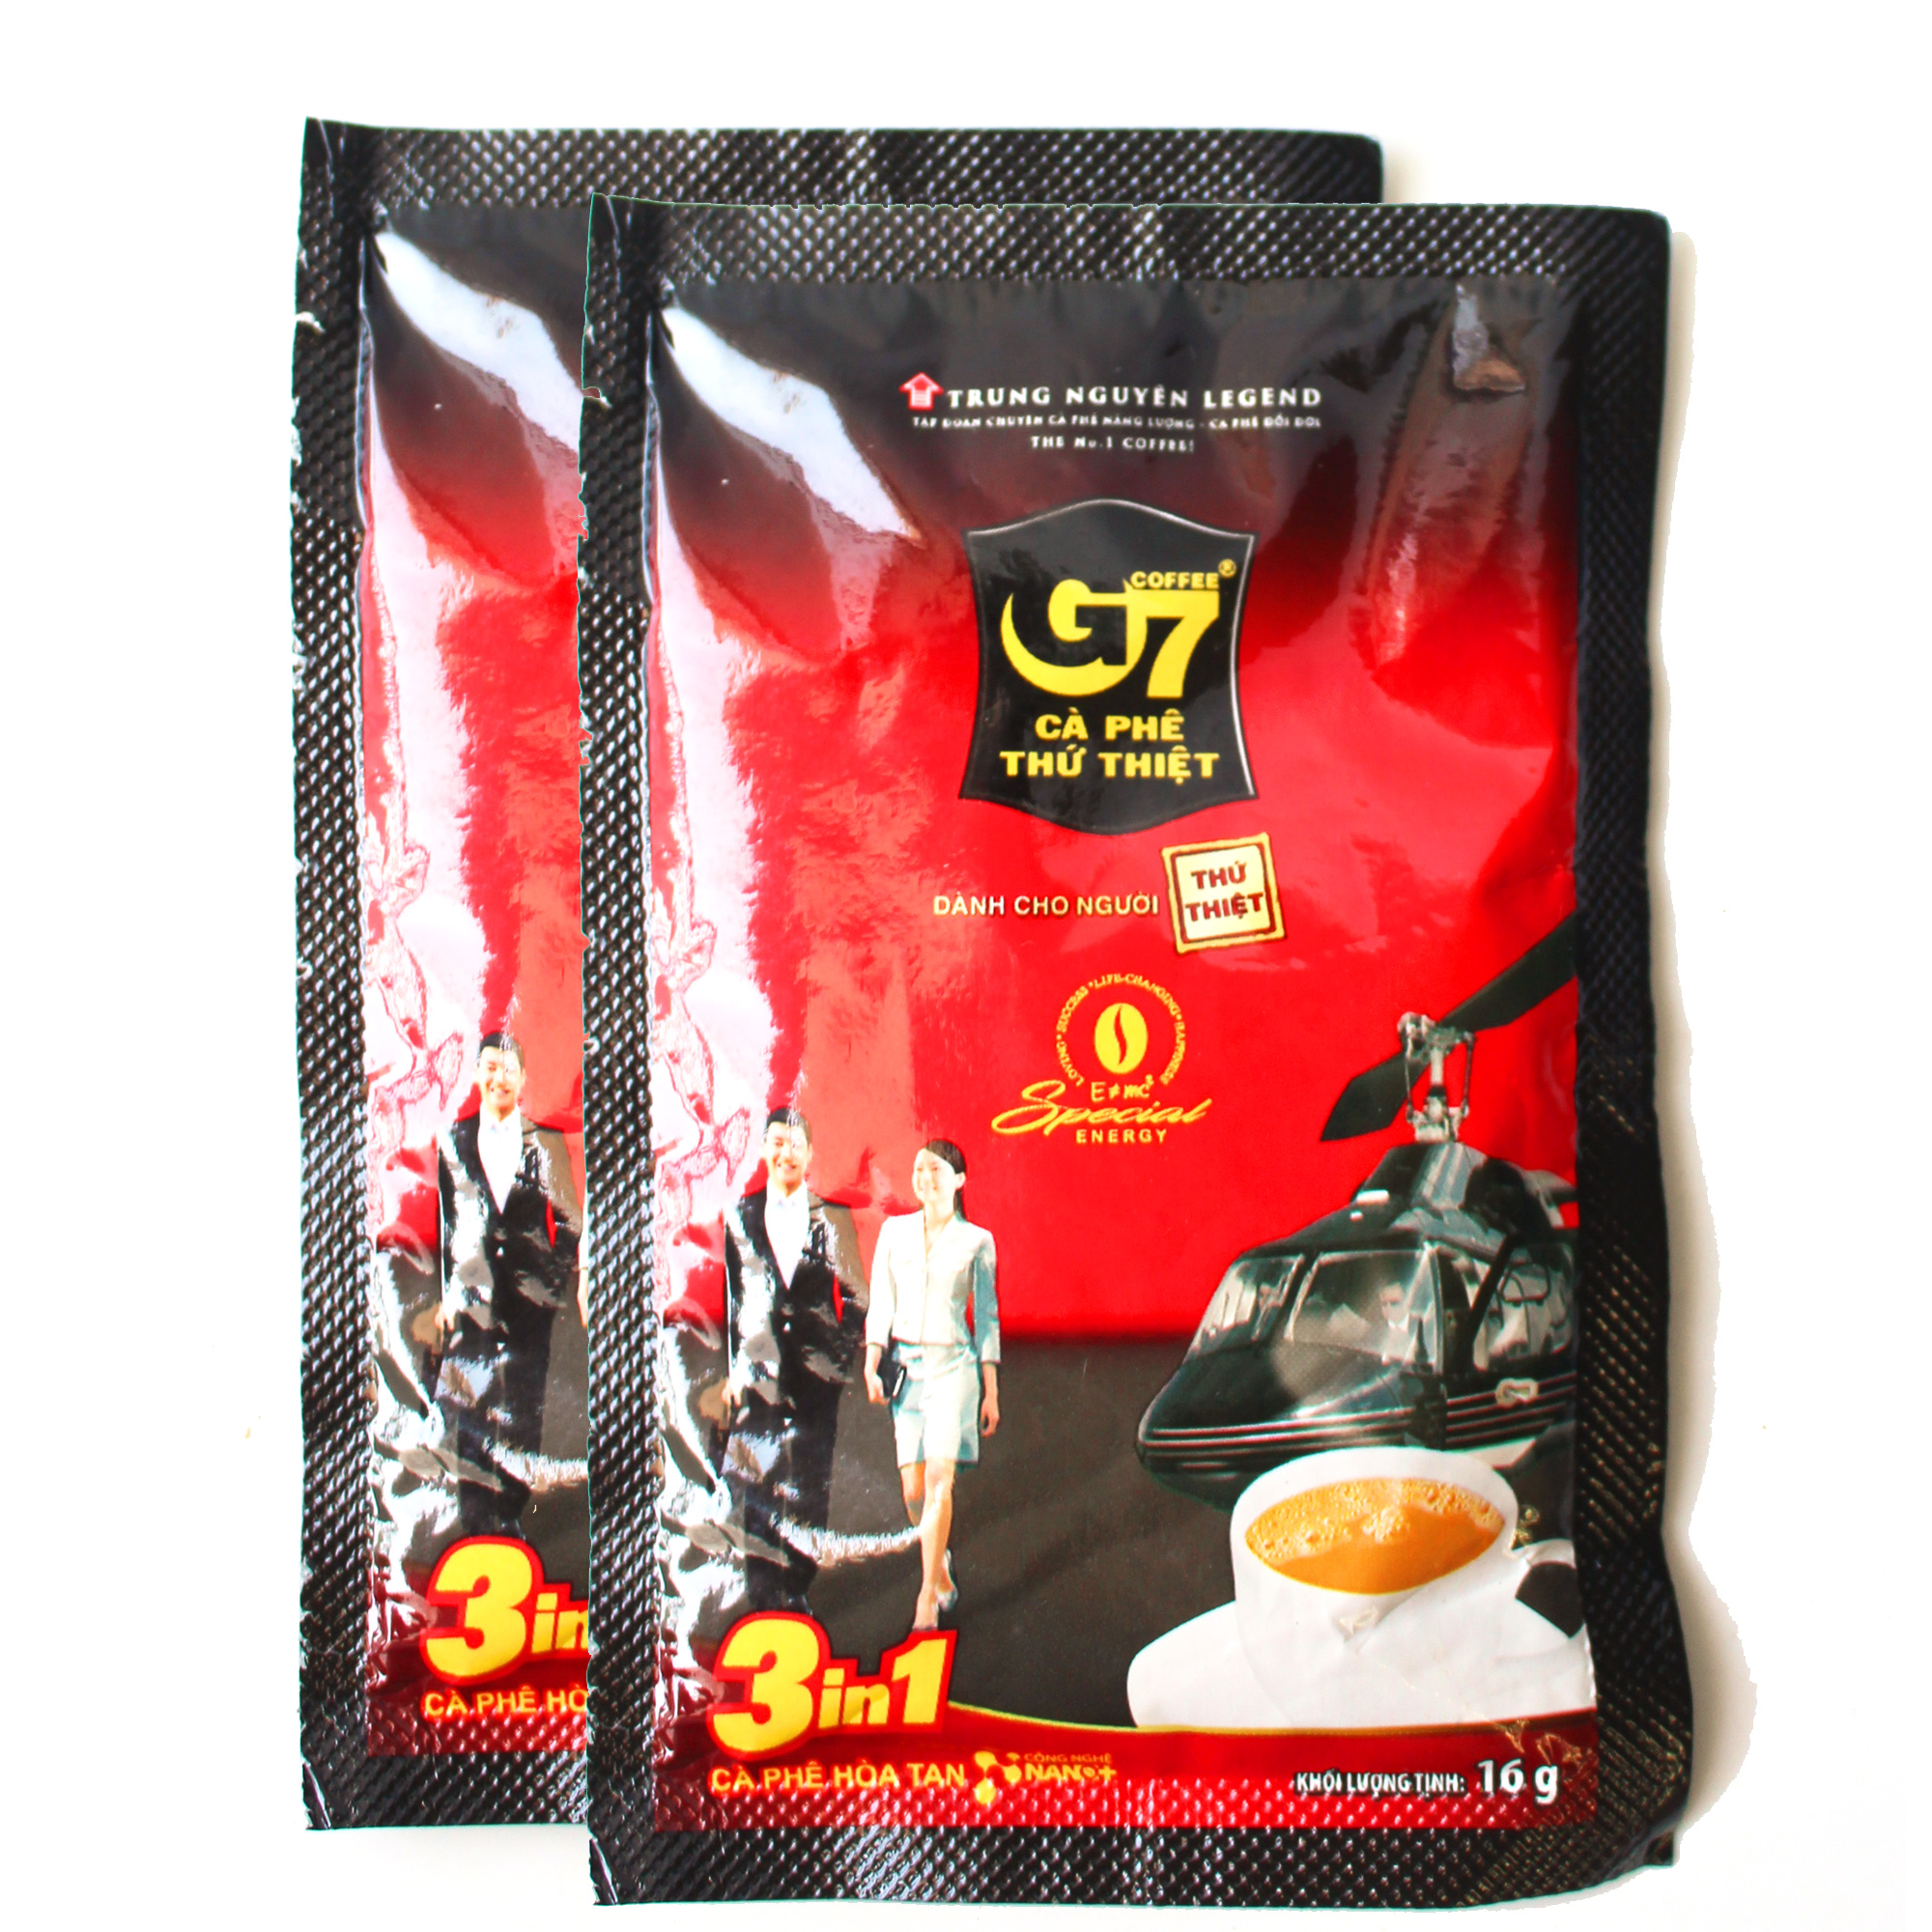 Combo 2 Gói lẻ 16gx2 - Cafe sữa hòa tan G7 3in1 - Trung Nguyên Legend